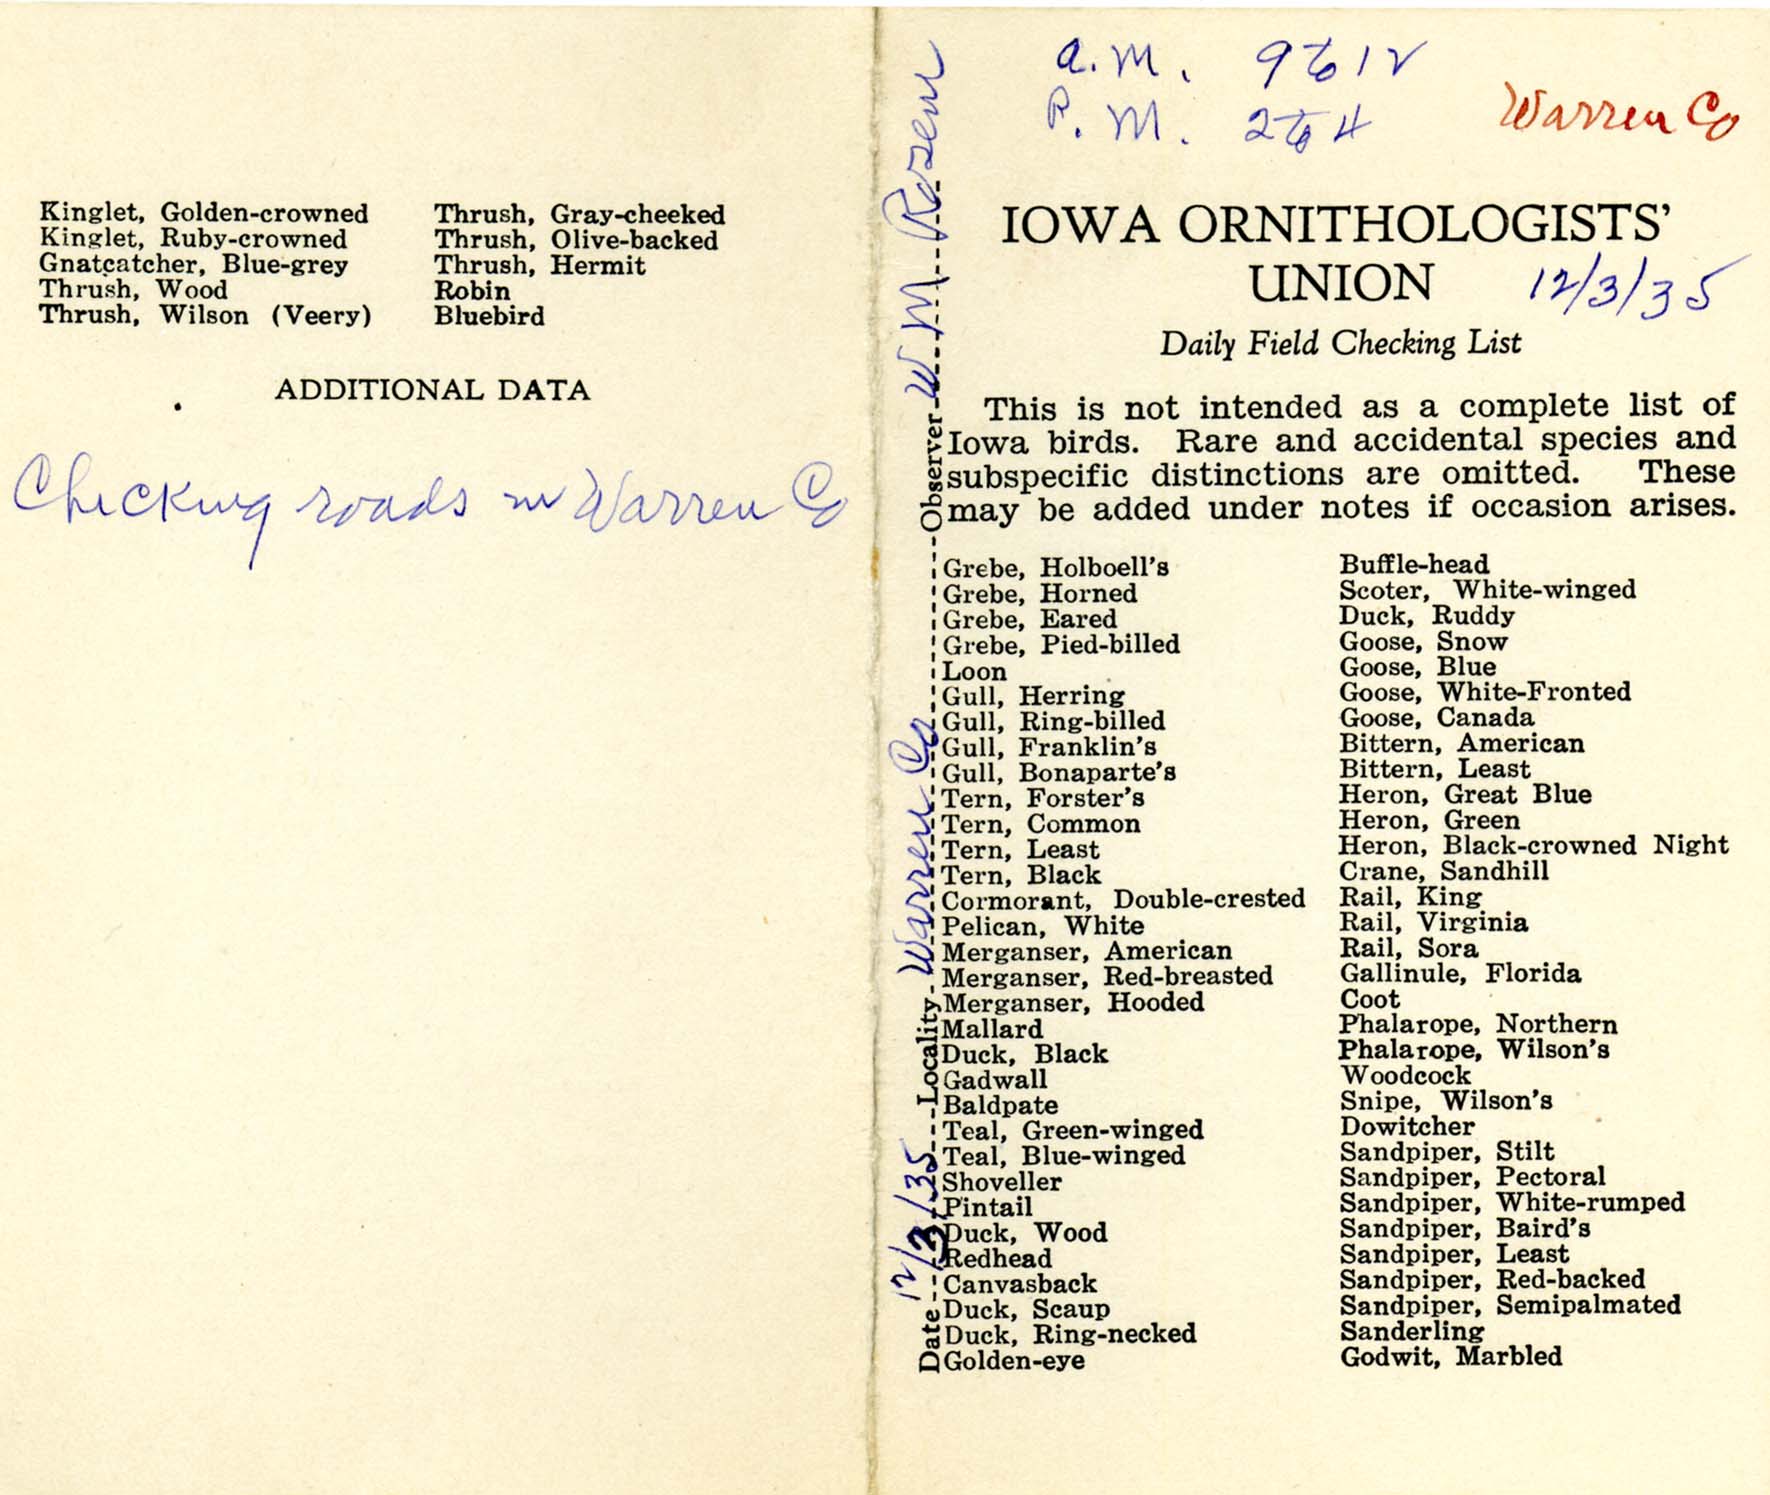 Daily field checking list, Walter Rosene, December 3, 1935